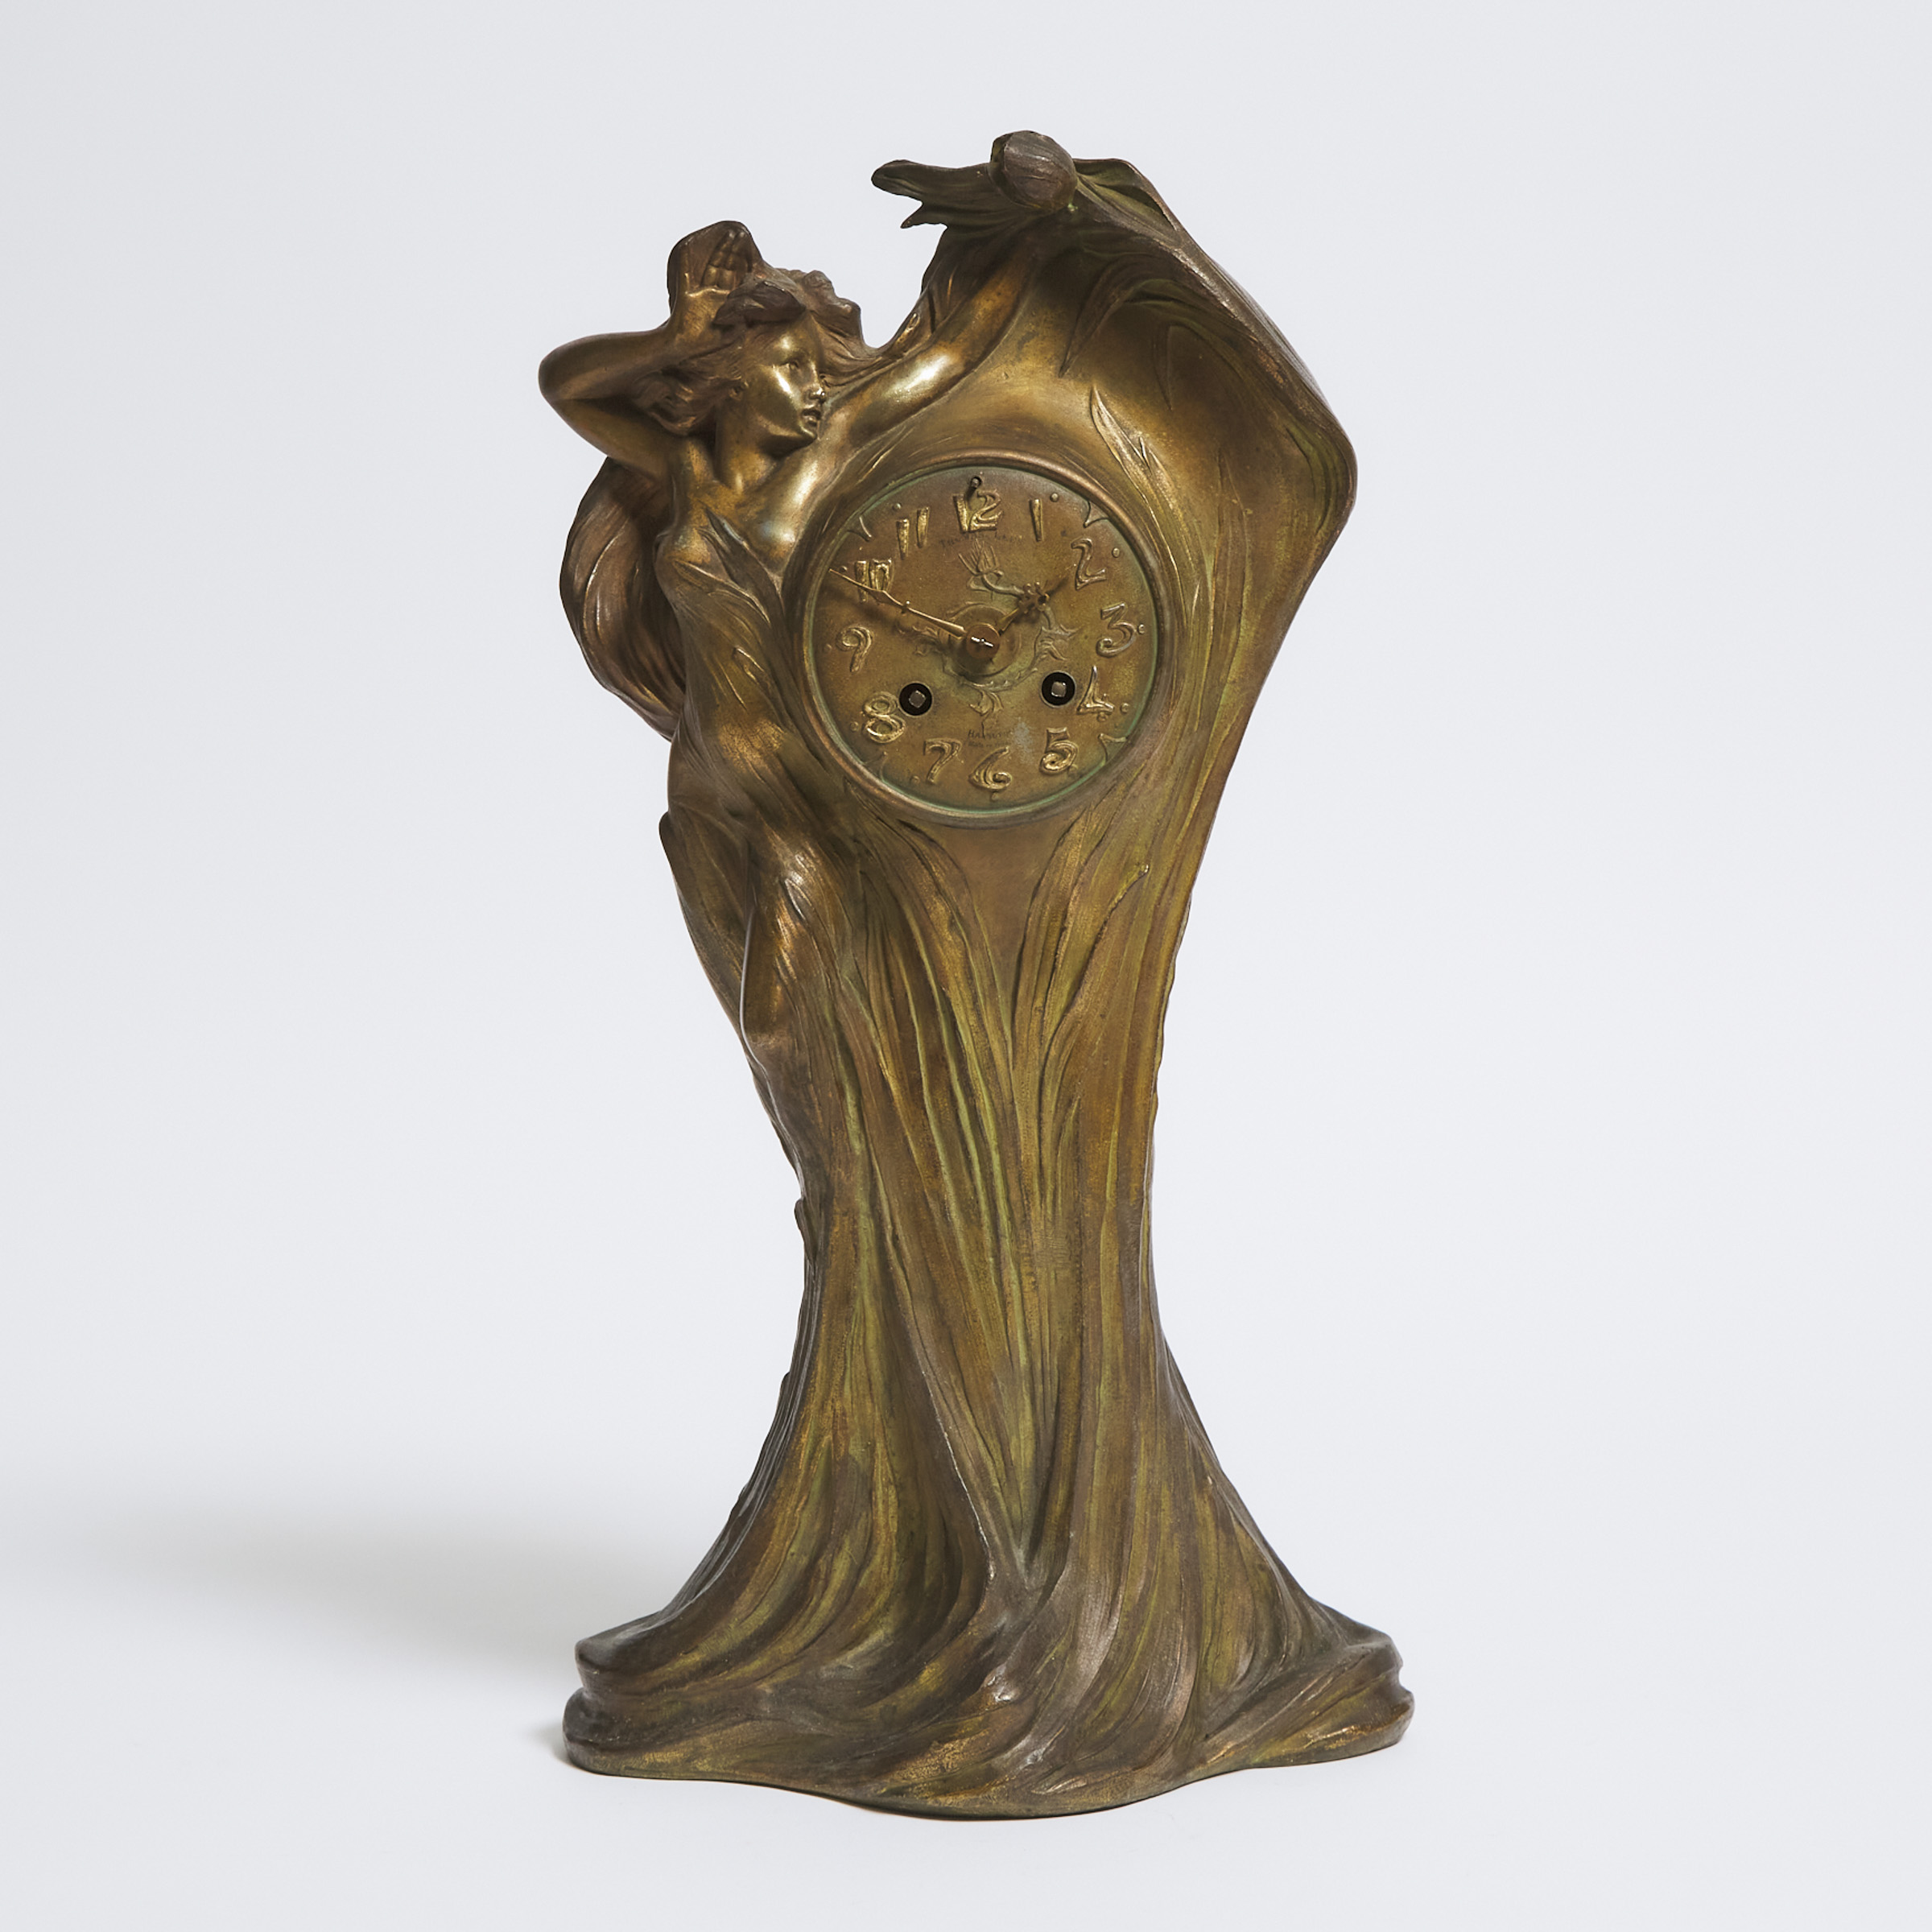 French Art Nouveau Gilt Metal Figural Mantel Clock, c.1900